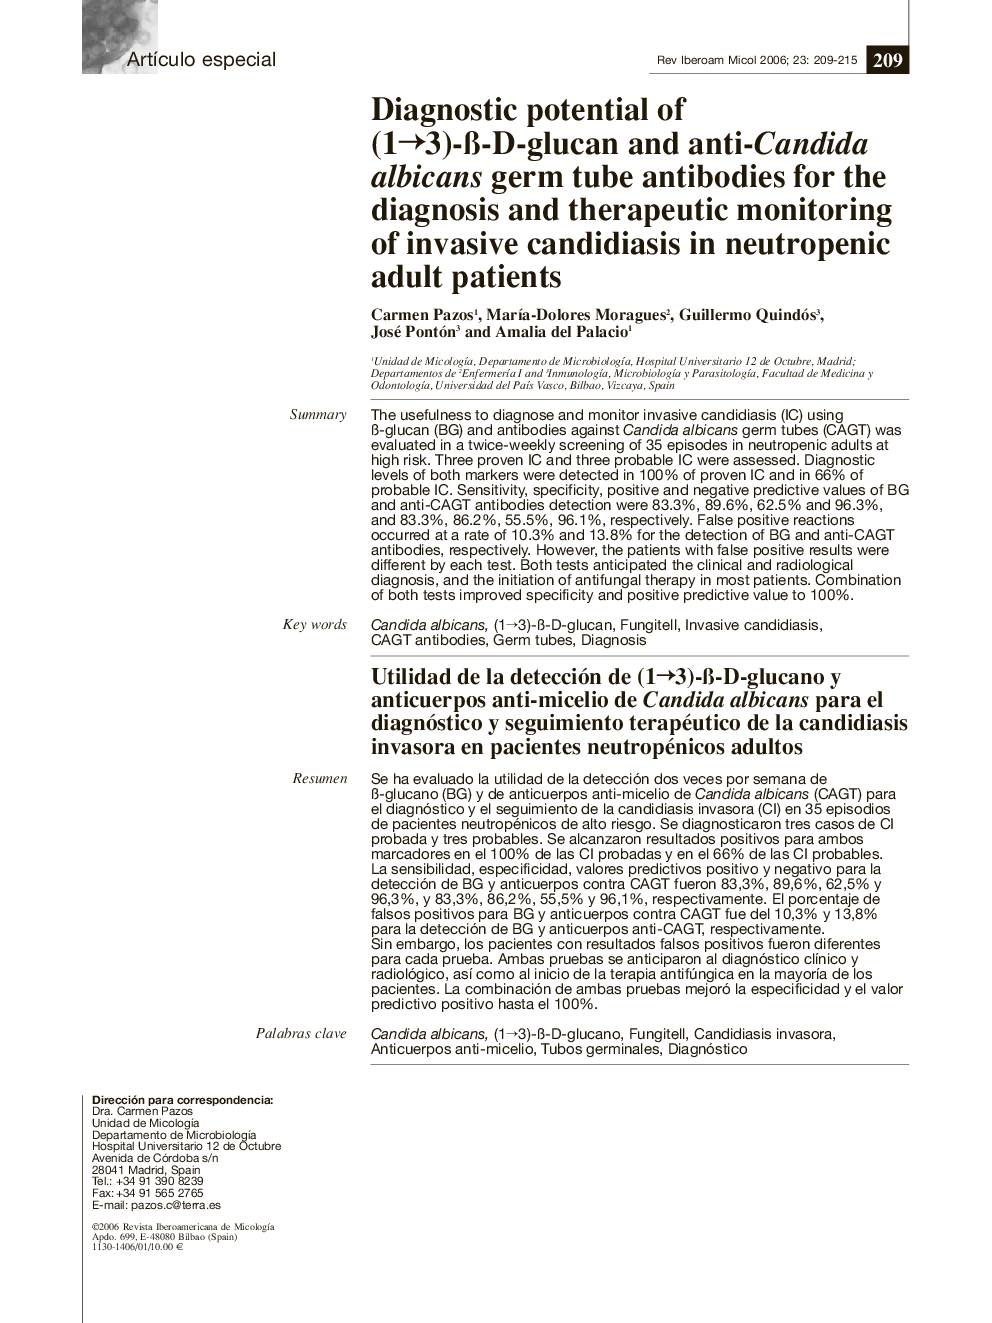 Utilidad de la detección de (1â3)-Ã-D-glucano y anticuerpos anti-micelio de Candida albicans para el diagnóstico y seguimiento terapéutico de la candidiasis invasora en pacientes neutropénicos adultos